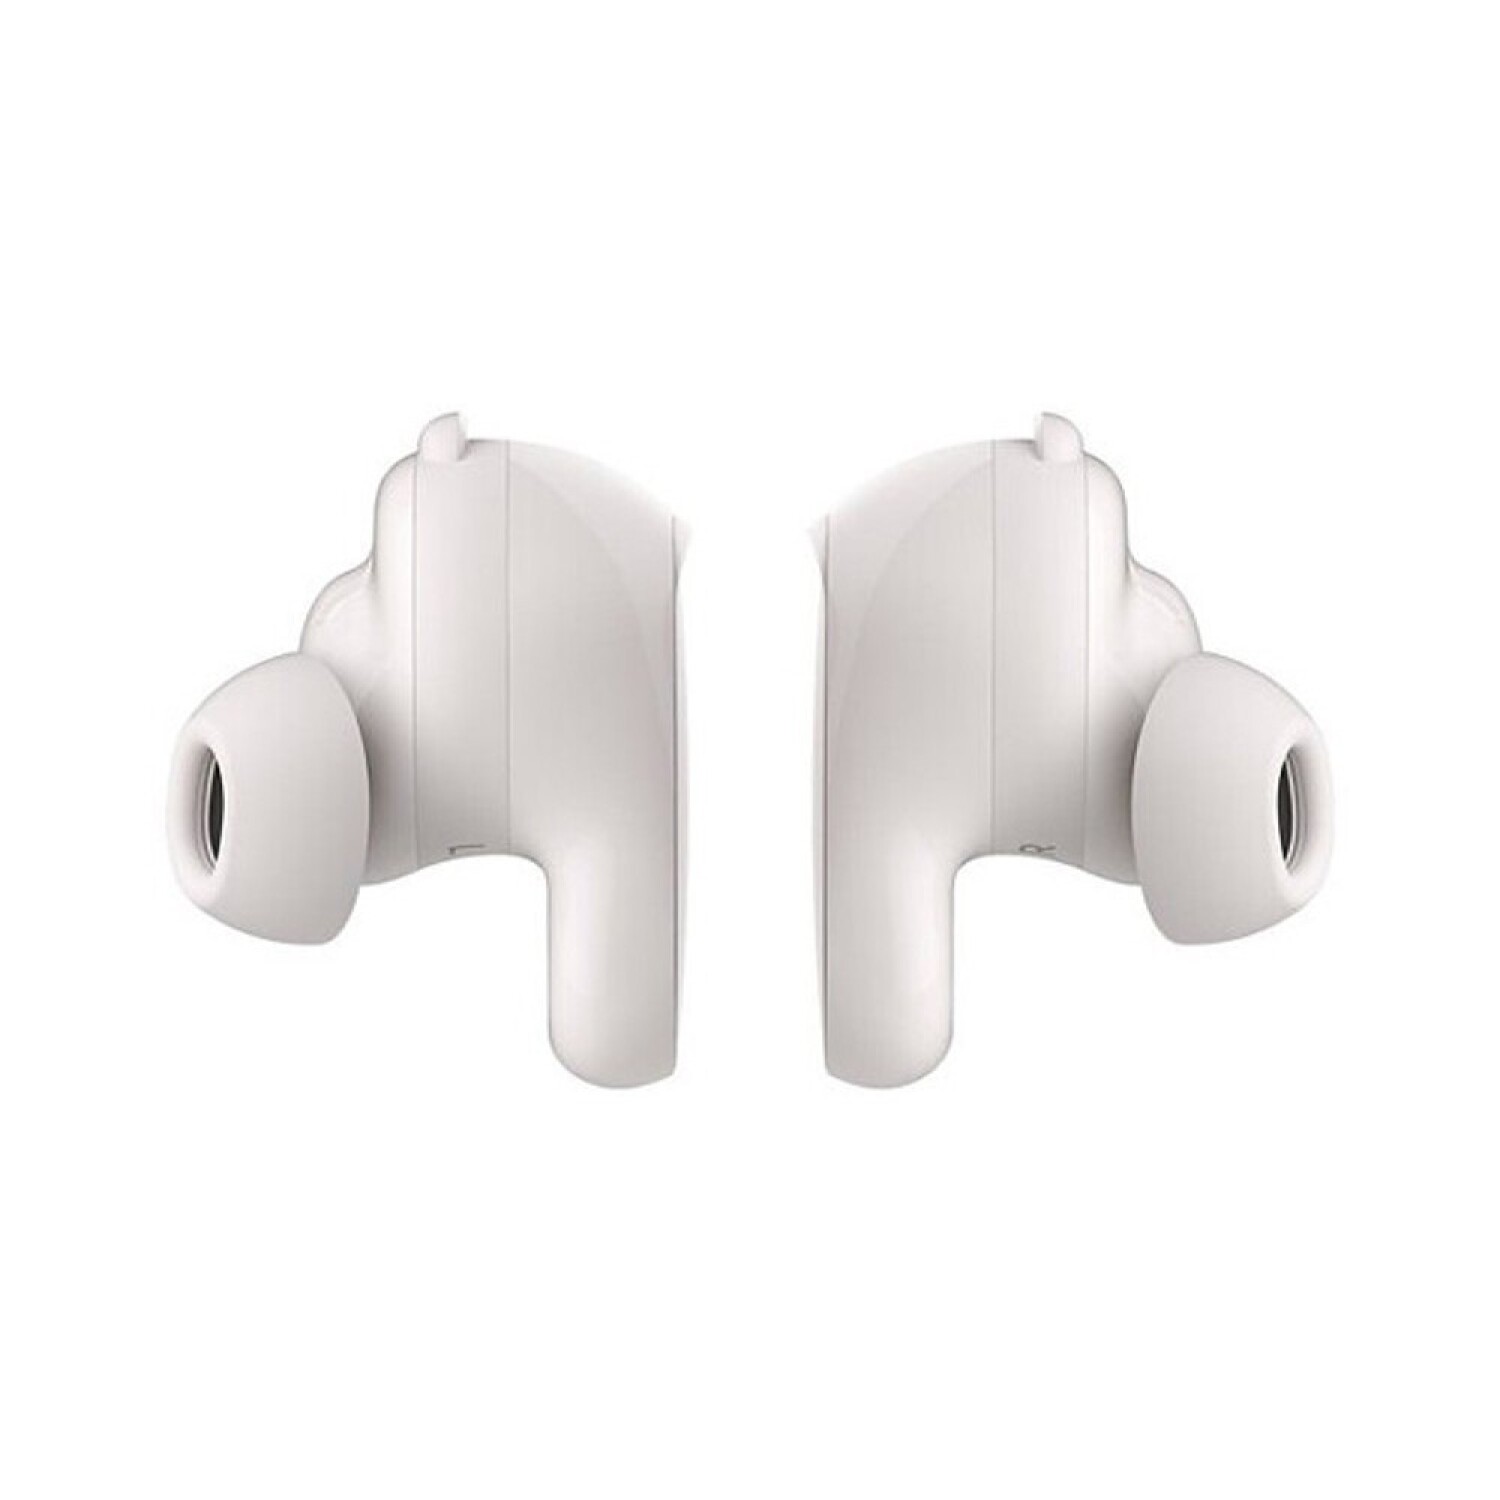 Auriculares Bose QuietComfort Earbuds con Cancelación de Ruido